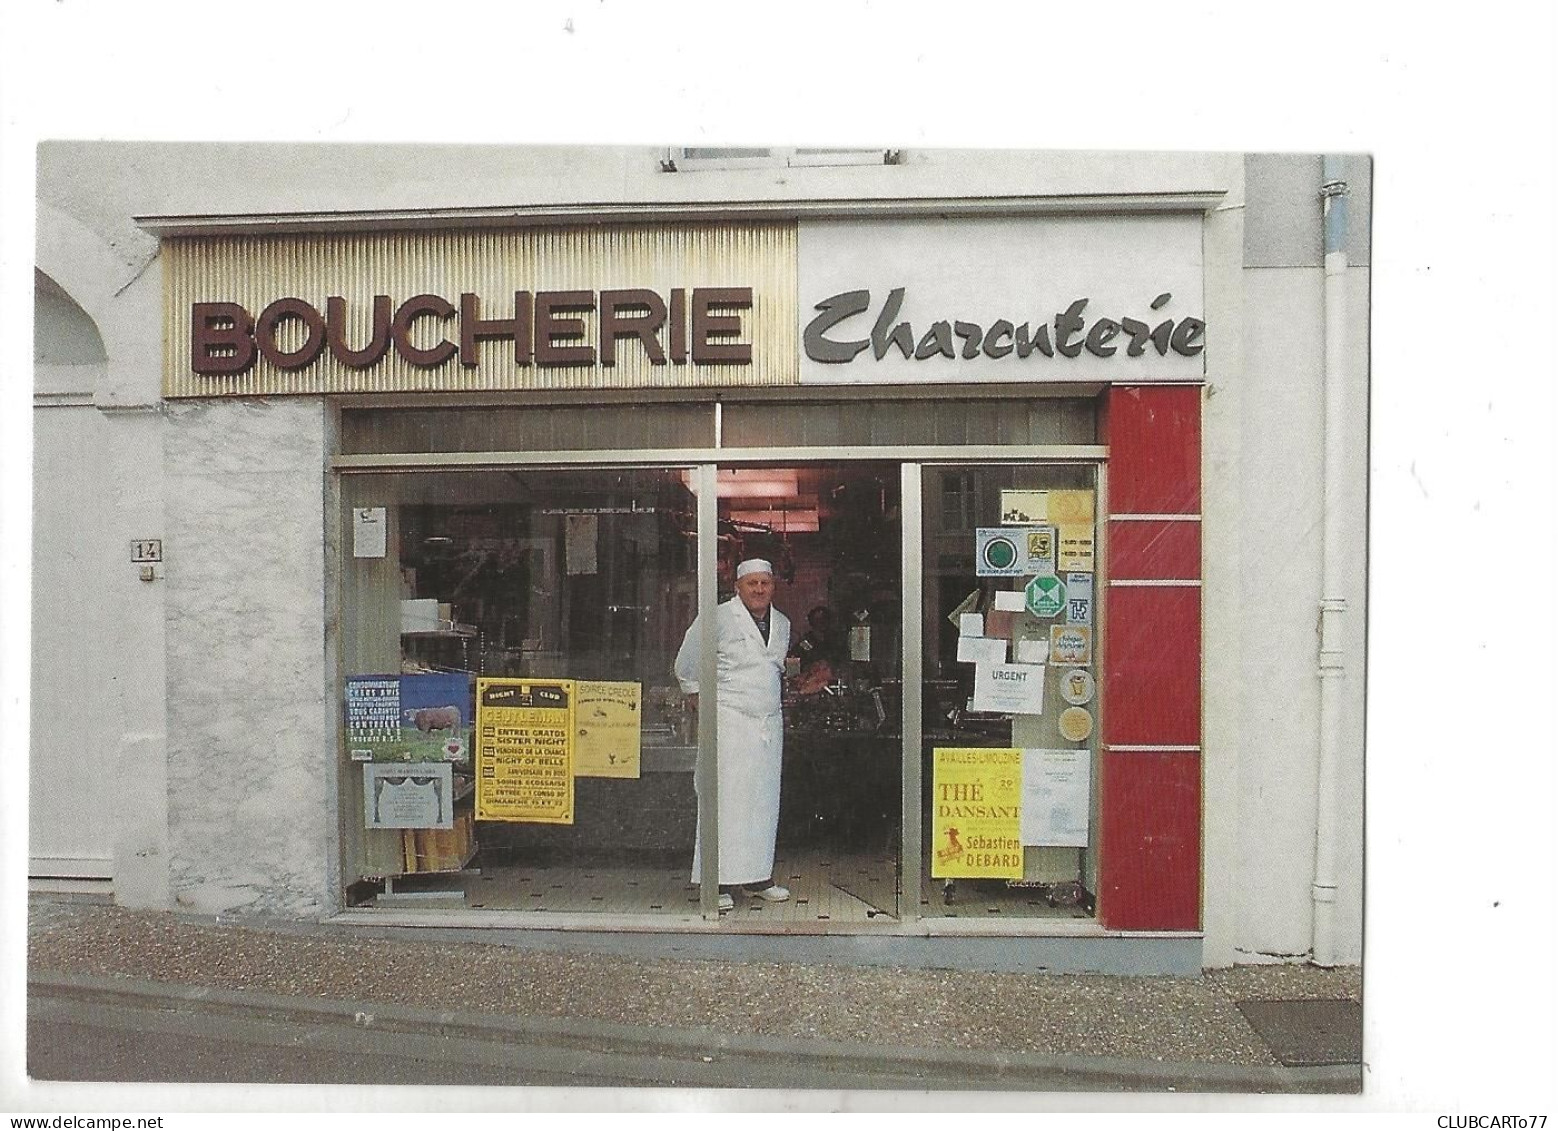 Availles-Limouzine (86) : GP Du Magasin Boucherie Dudognon Rue Principale En 2001 (animé)GF. - Availles Limouzine